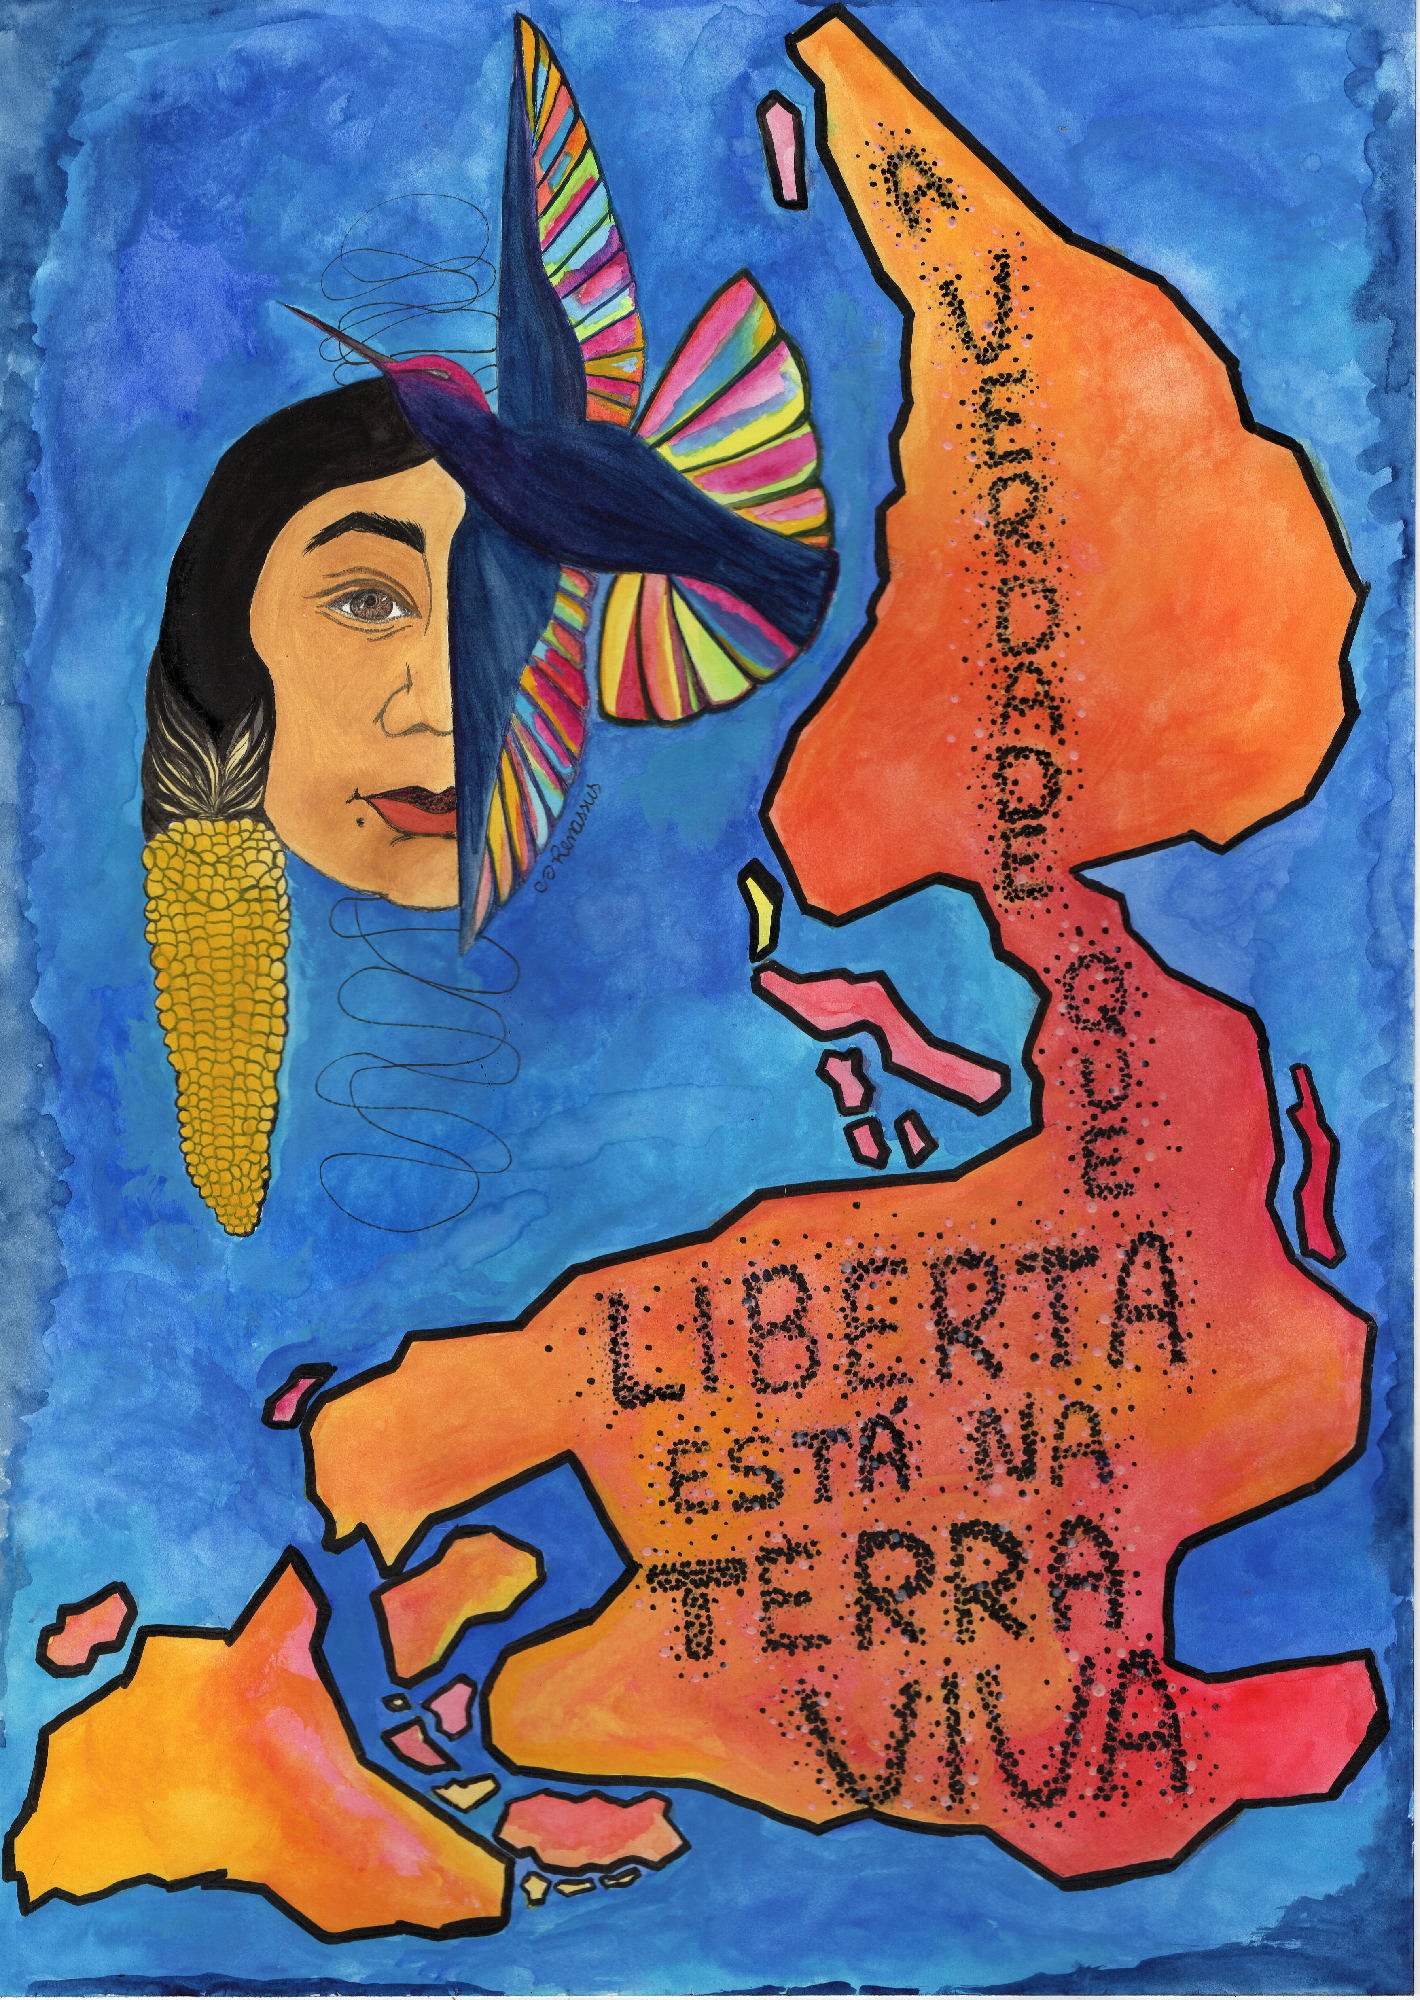 Terre vivante, Renata Inahuazo, 2021, Aquarelle, encre de Chine et peinture pour tissu sur papier A3